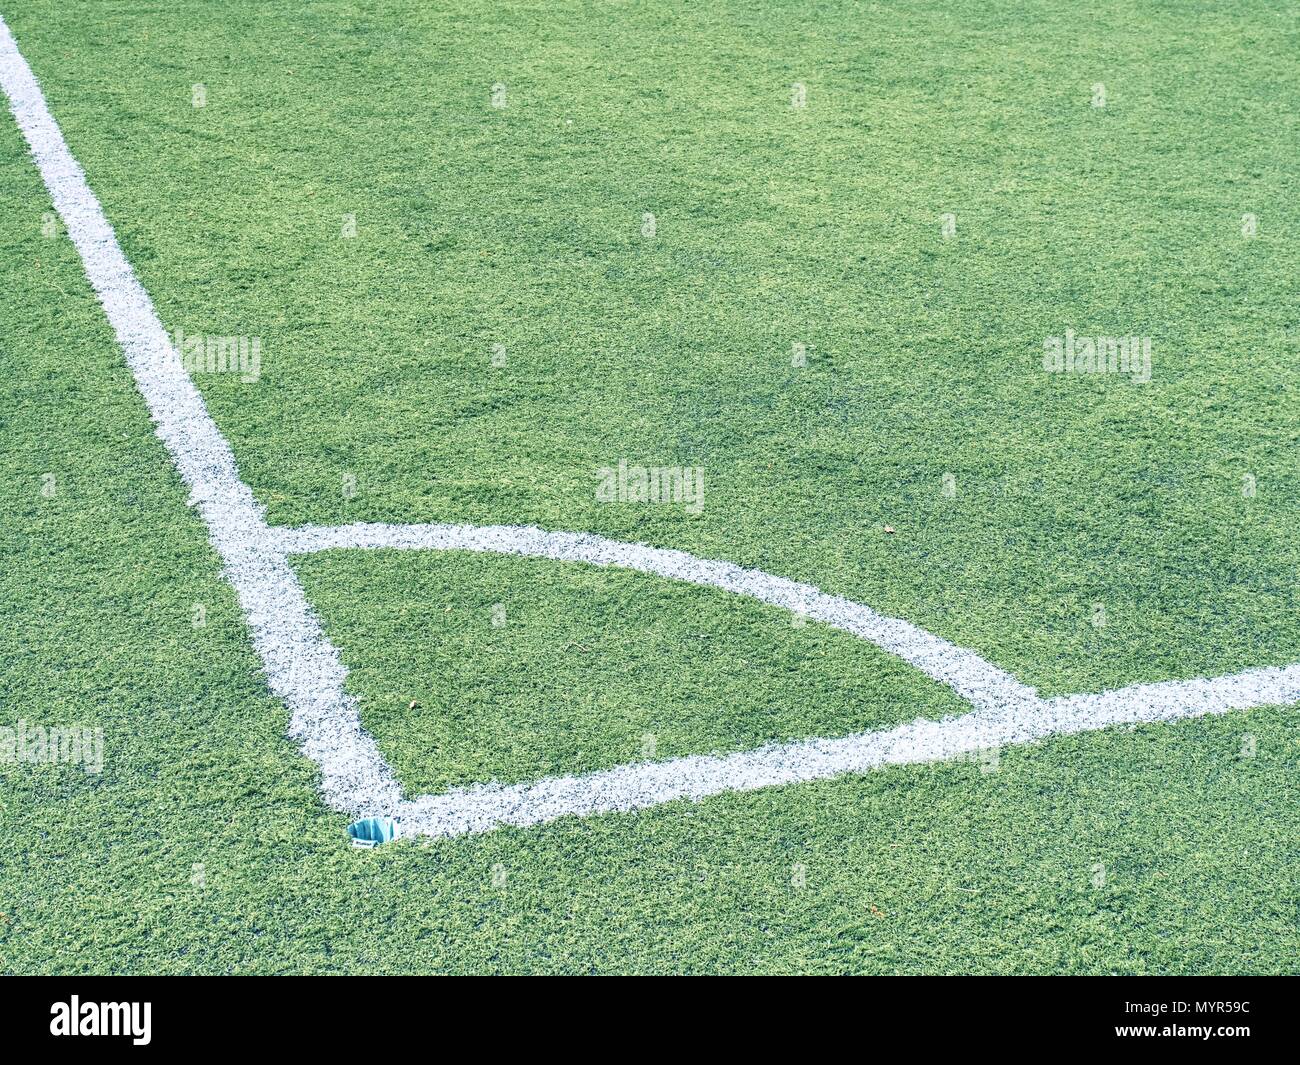 Kunstrasen für Fußball (Fußball) Sportplatz. Muster der grünen Kunstrasen.  Outdoor Training Wiedergabe", Feld Stockfotografie - Alamy